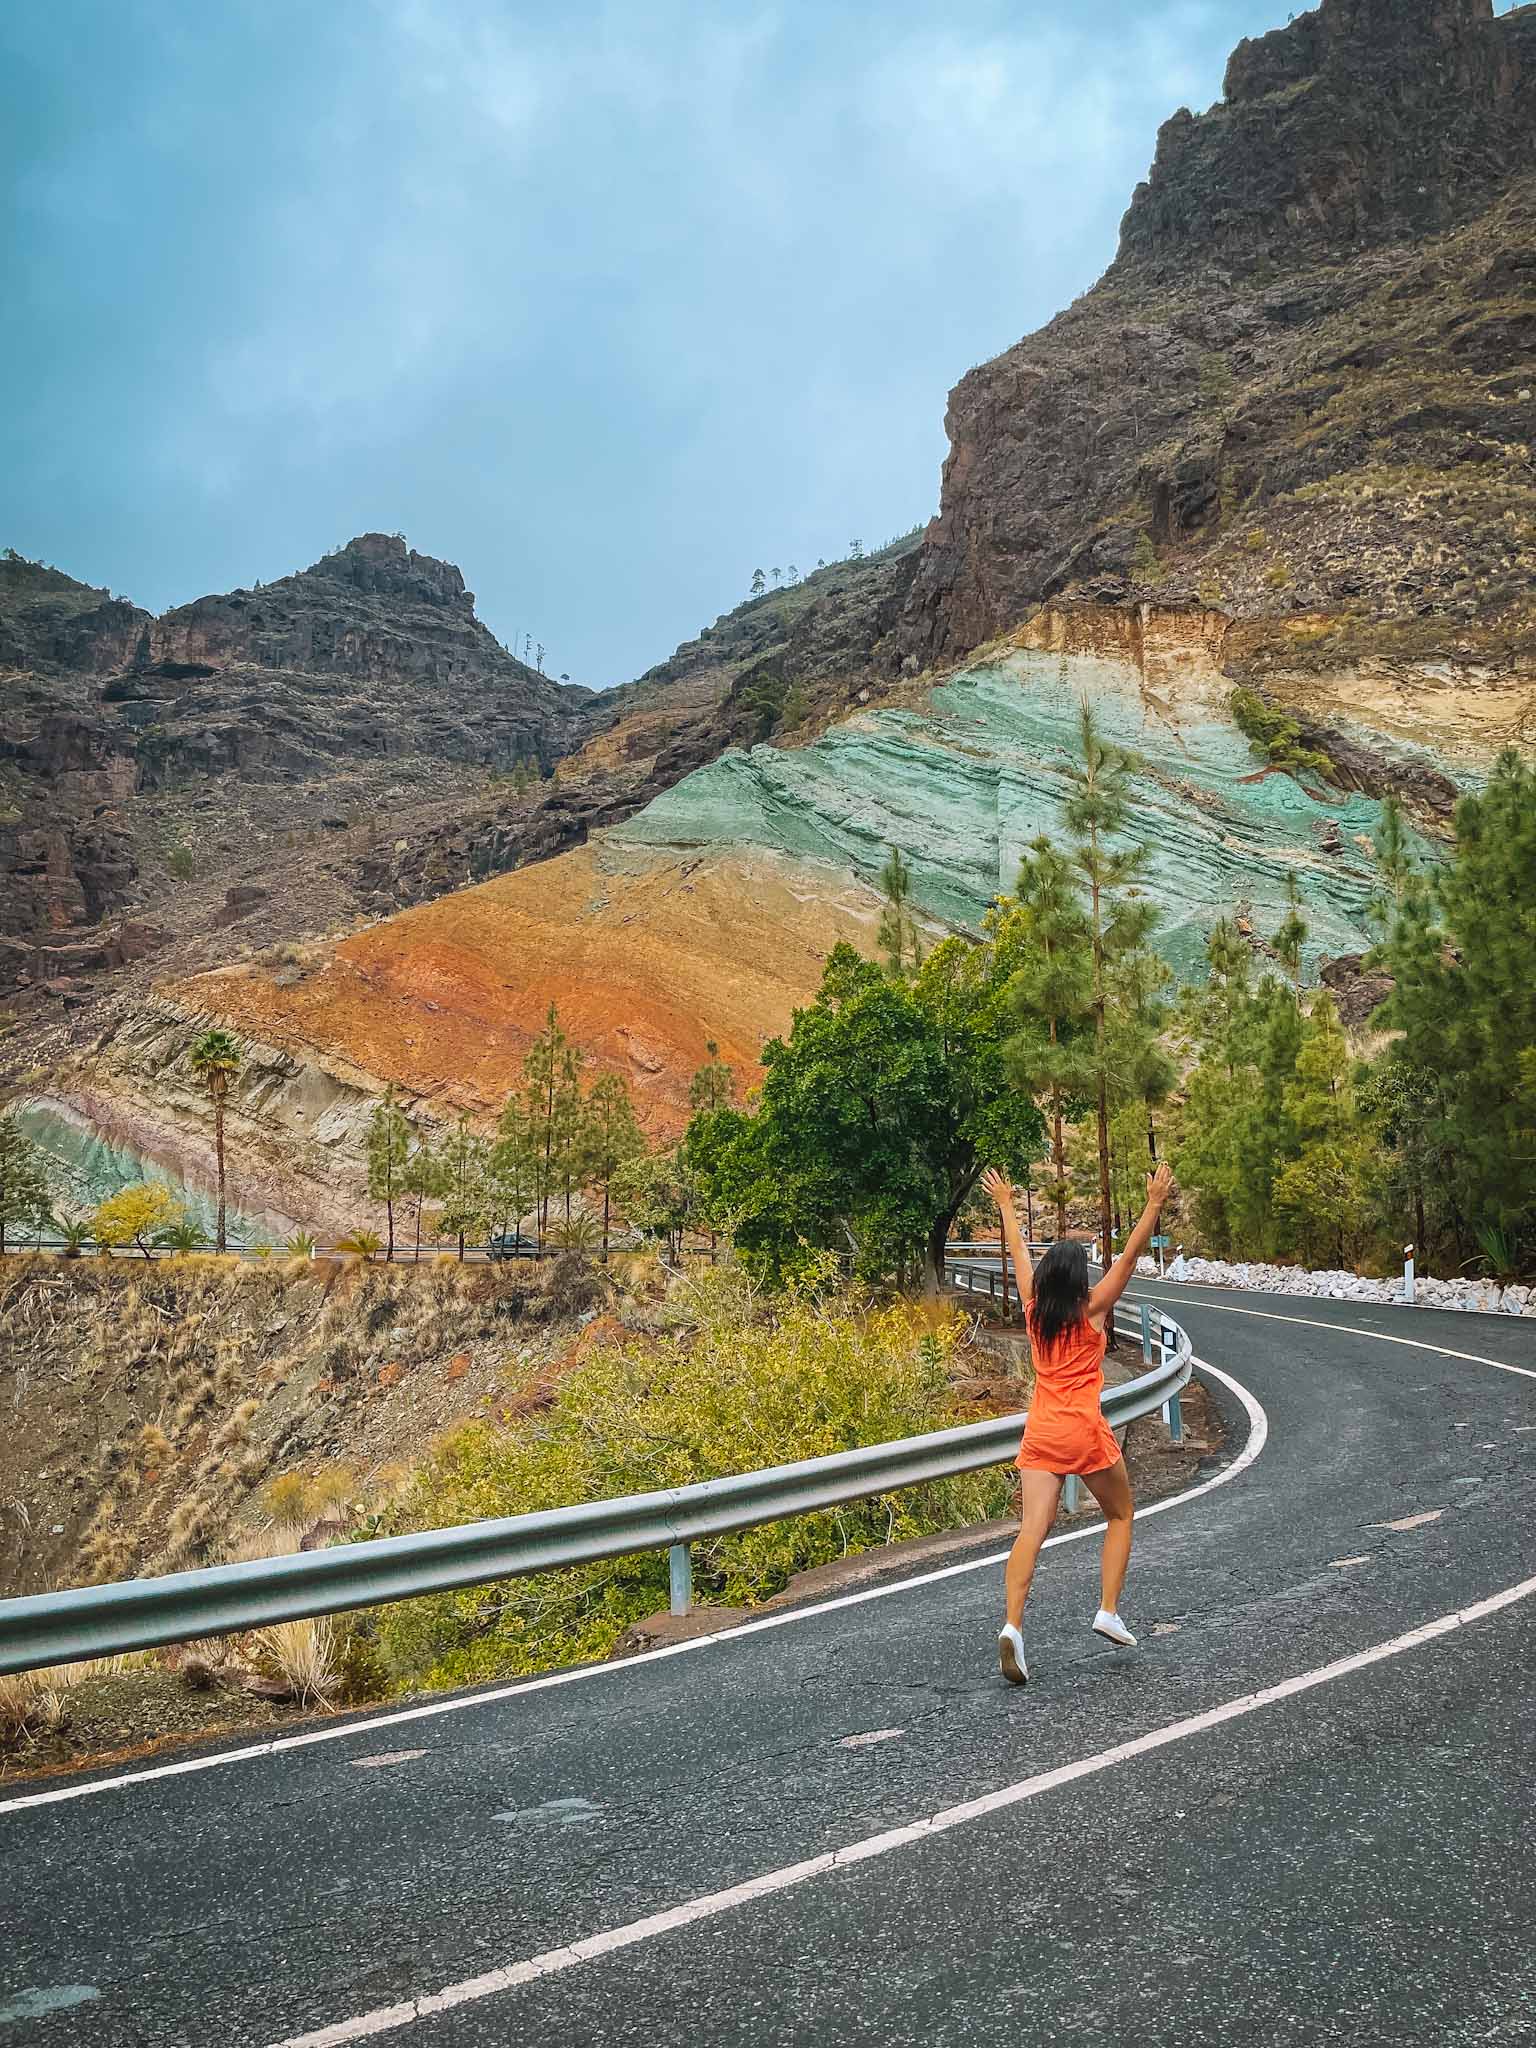 Los Azulejos - Rainbow Rocks in Gran Canaria